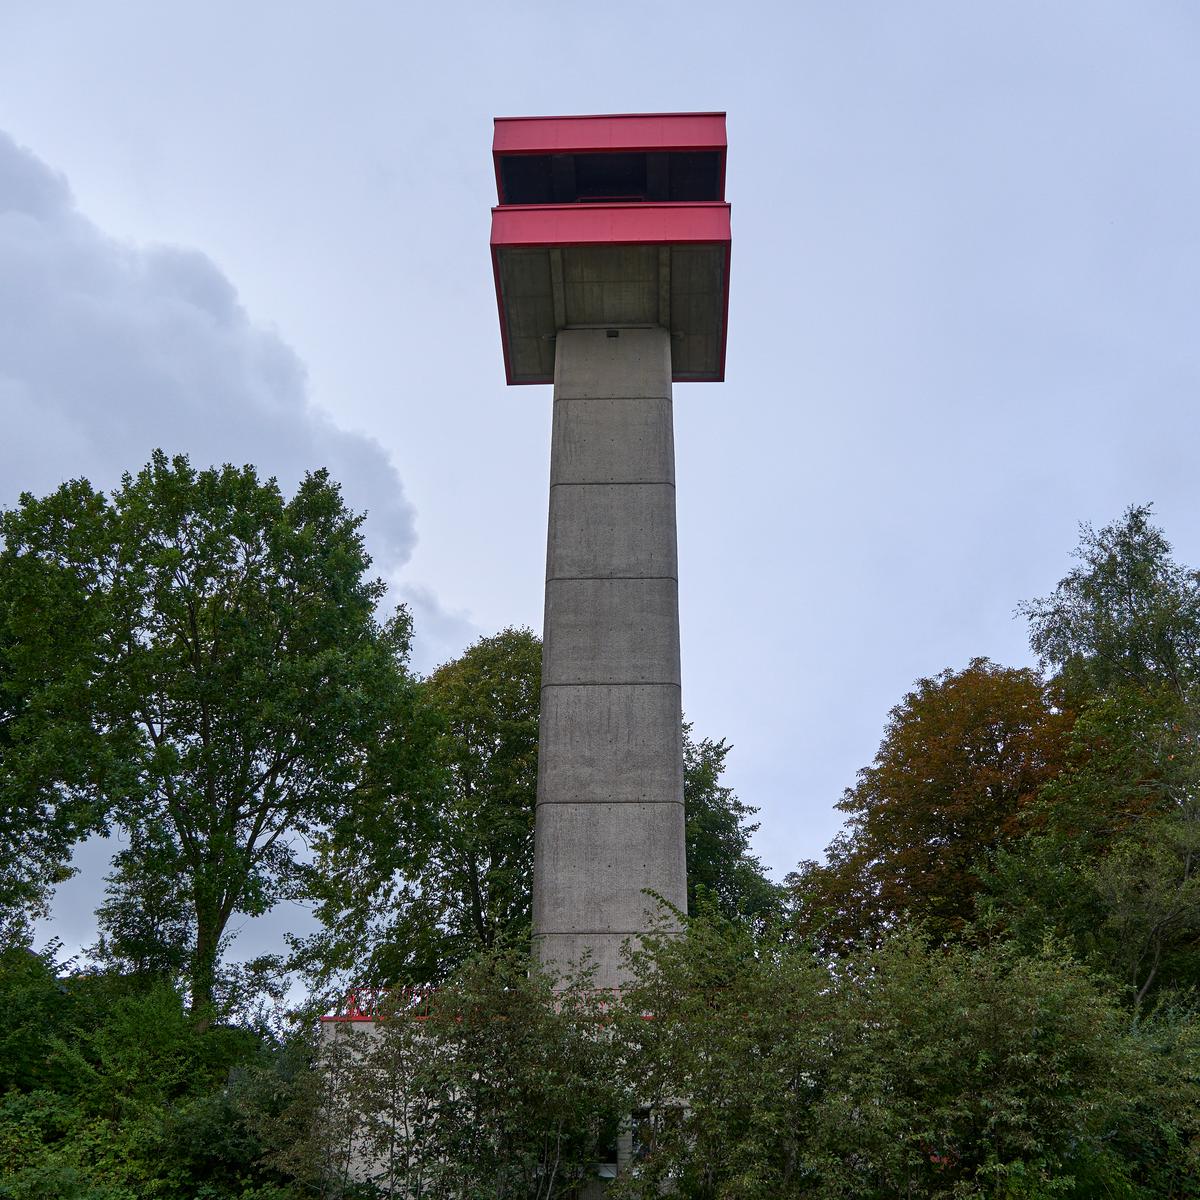 Gallery: 2022-09-leuchtturm-eckernfoerde-neu